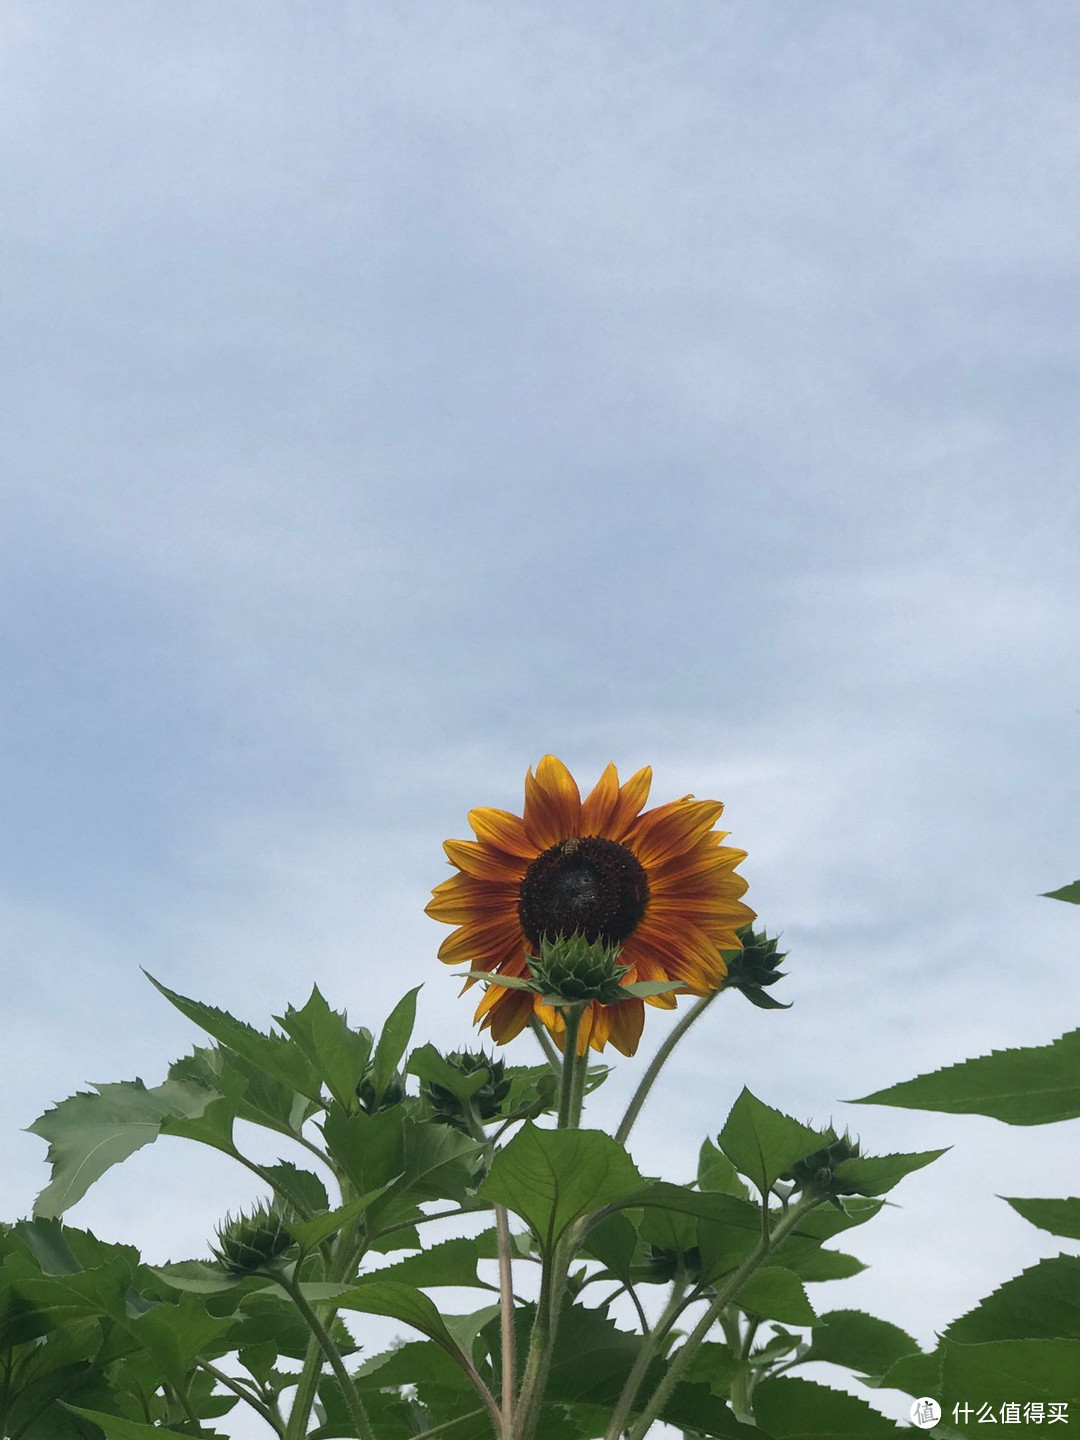 喜欢向日葵不仅只是好看，欣赏的是他的向阳而生的态度！